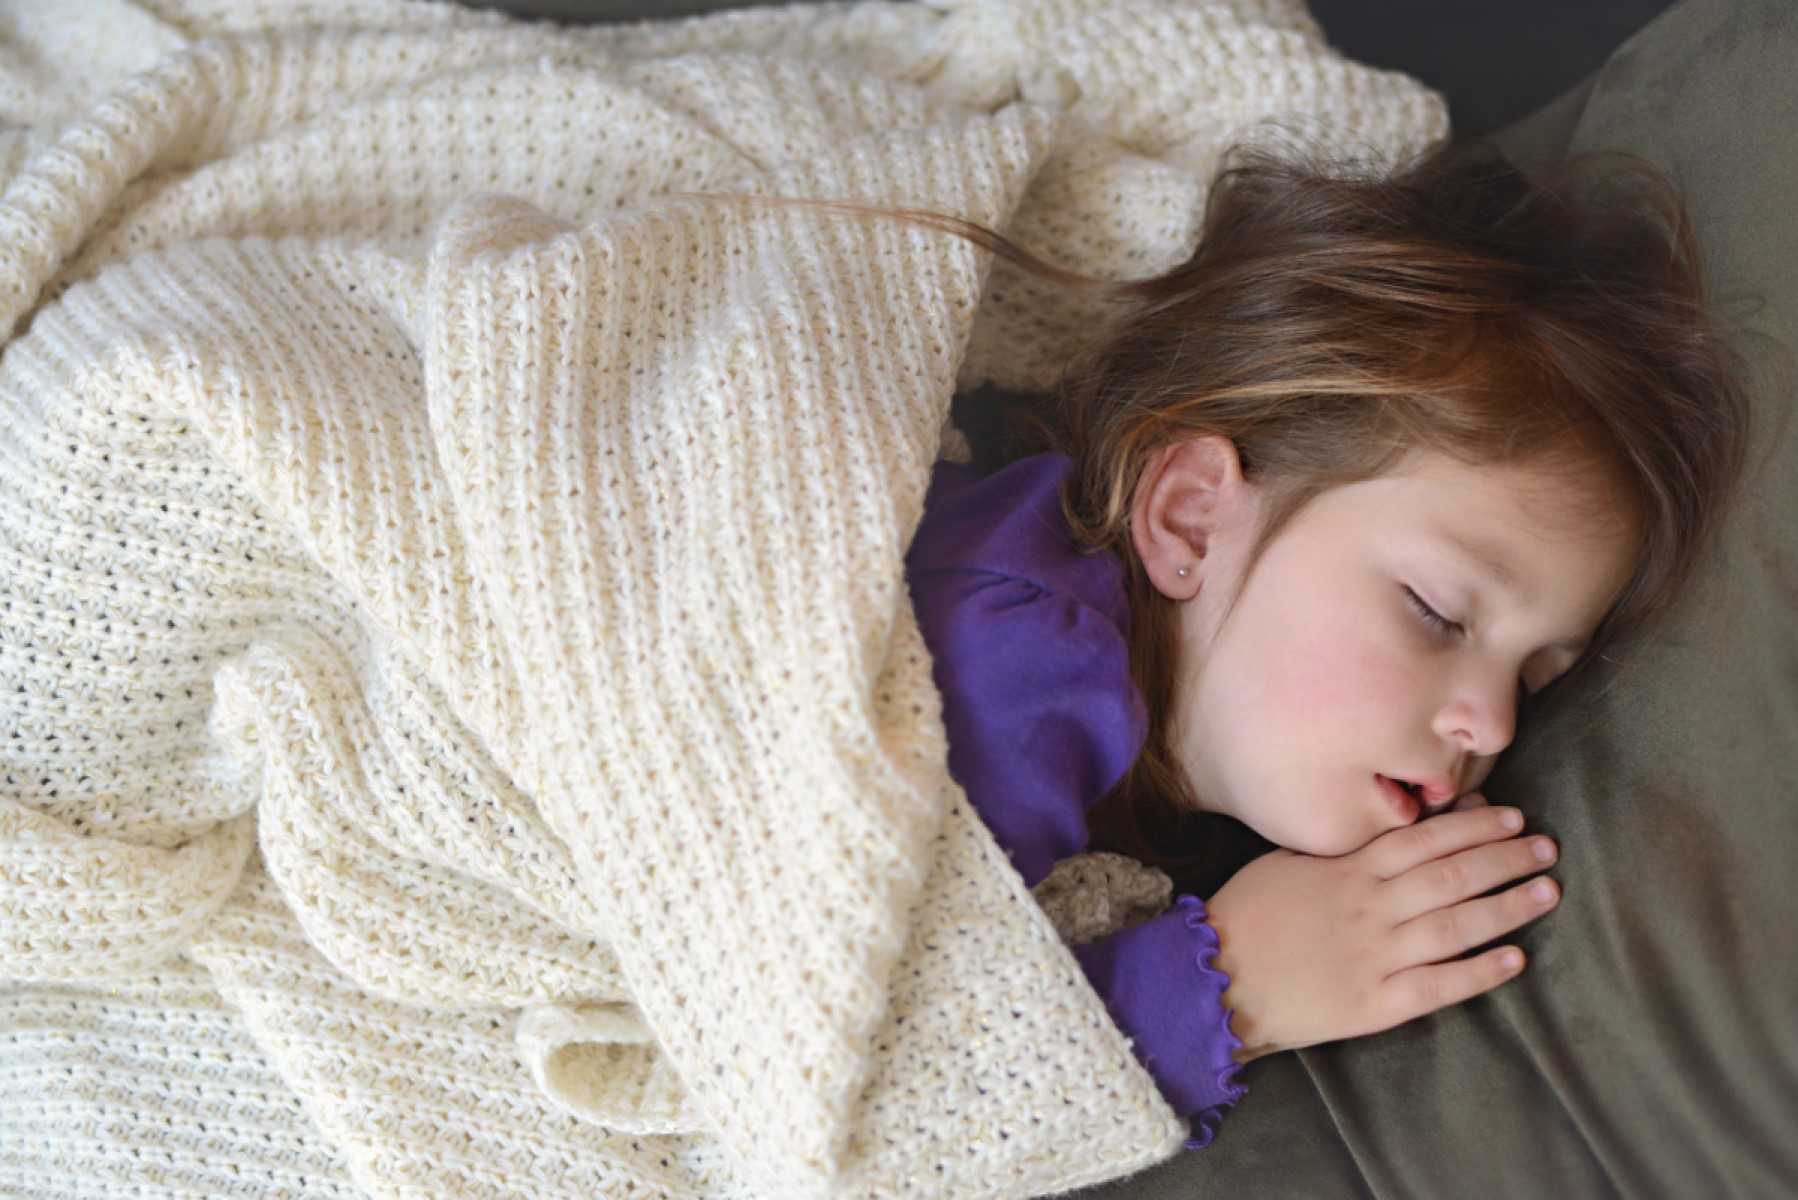 Sleeping child under blanket